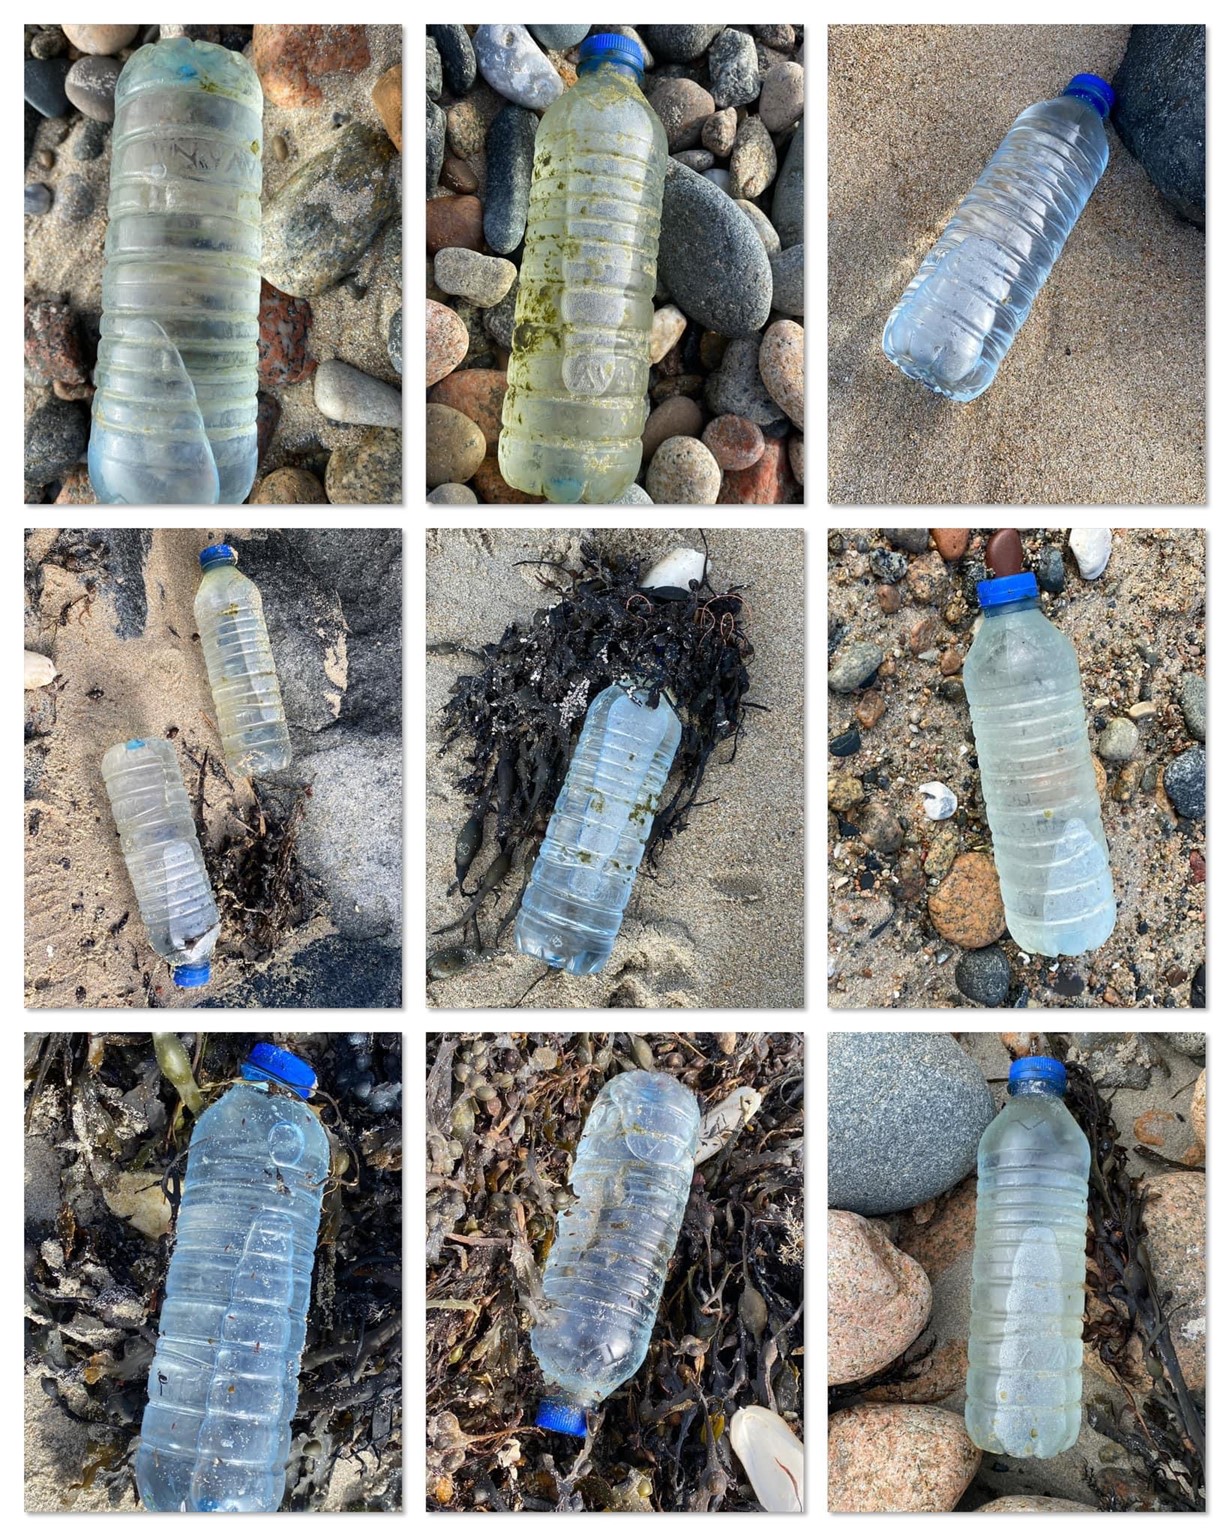 Plastic_bottle_from_Feb_2022_cargo_spillage.jpg